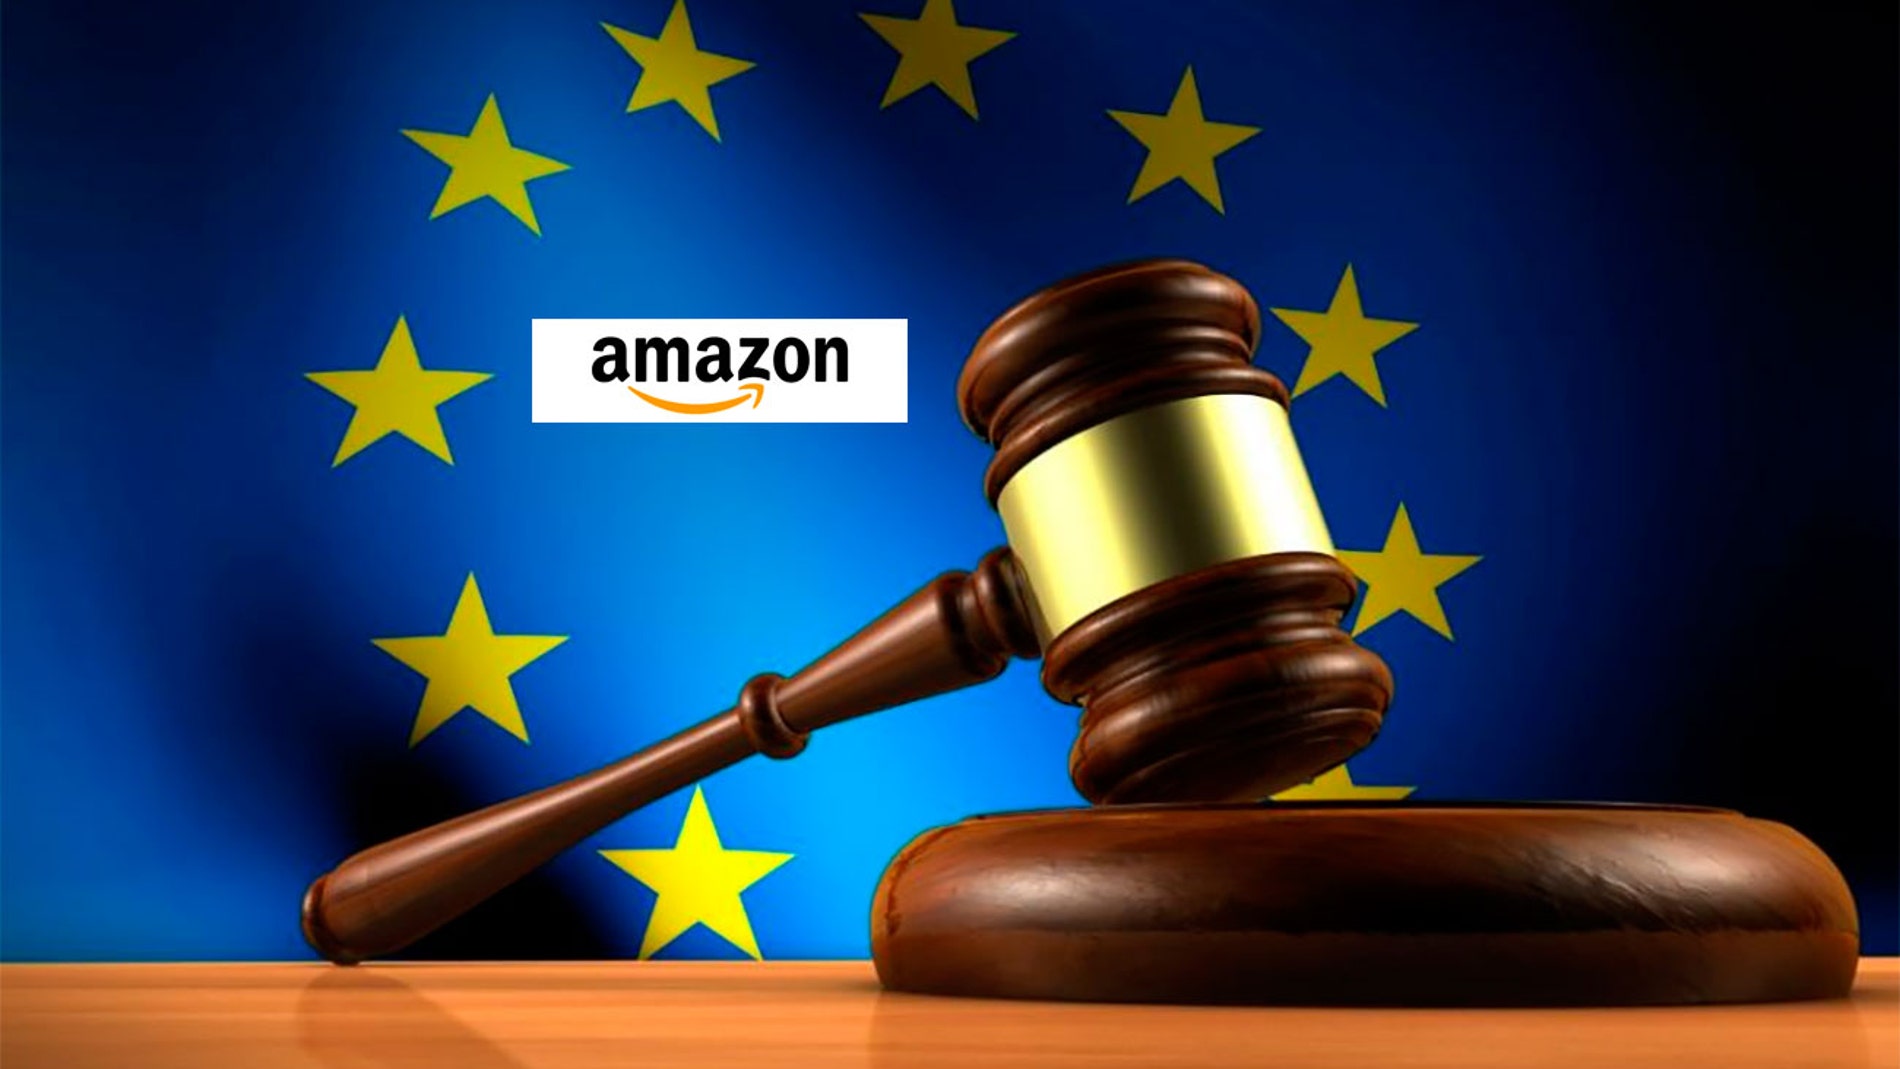 Amazon y Europa